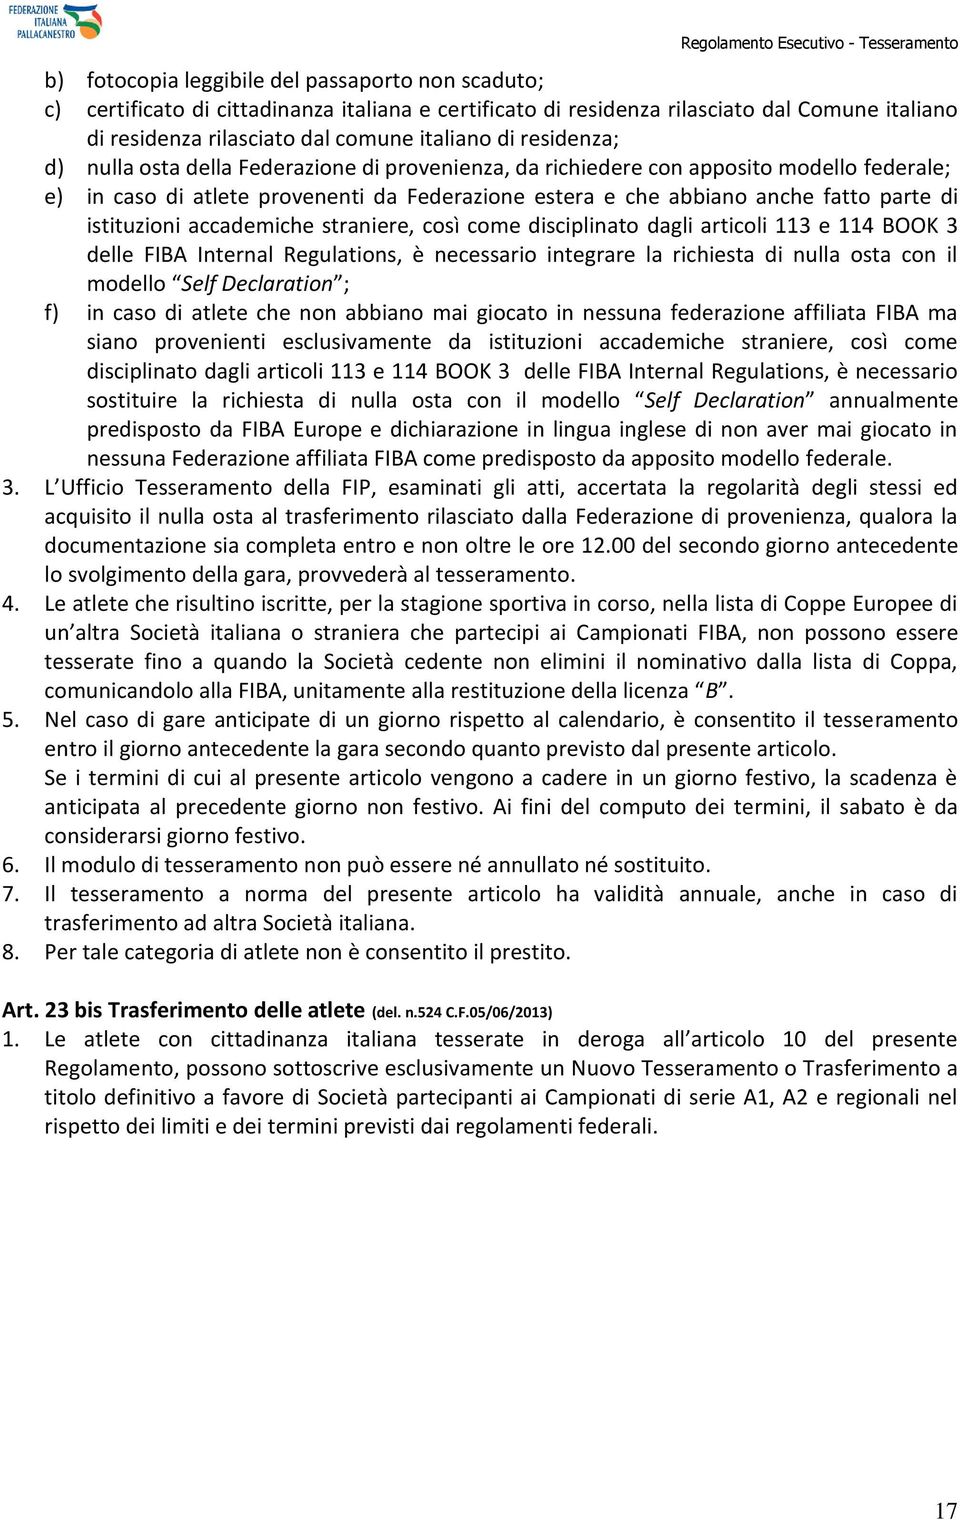 istituzioni accademiche straniere, così come disciplinato dagli articoli 113 e 114 BOOK 3 delle FIBA Internal Regulations, è necessario integrare la richiesta di nulla osta con il modello Self